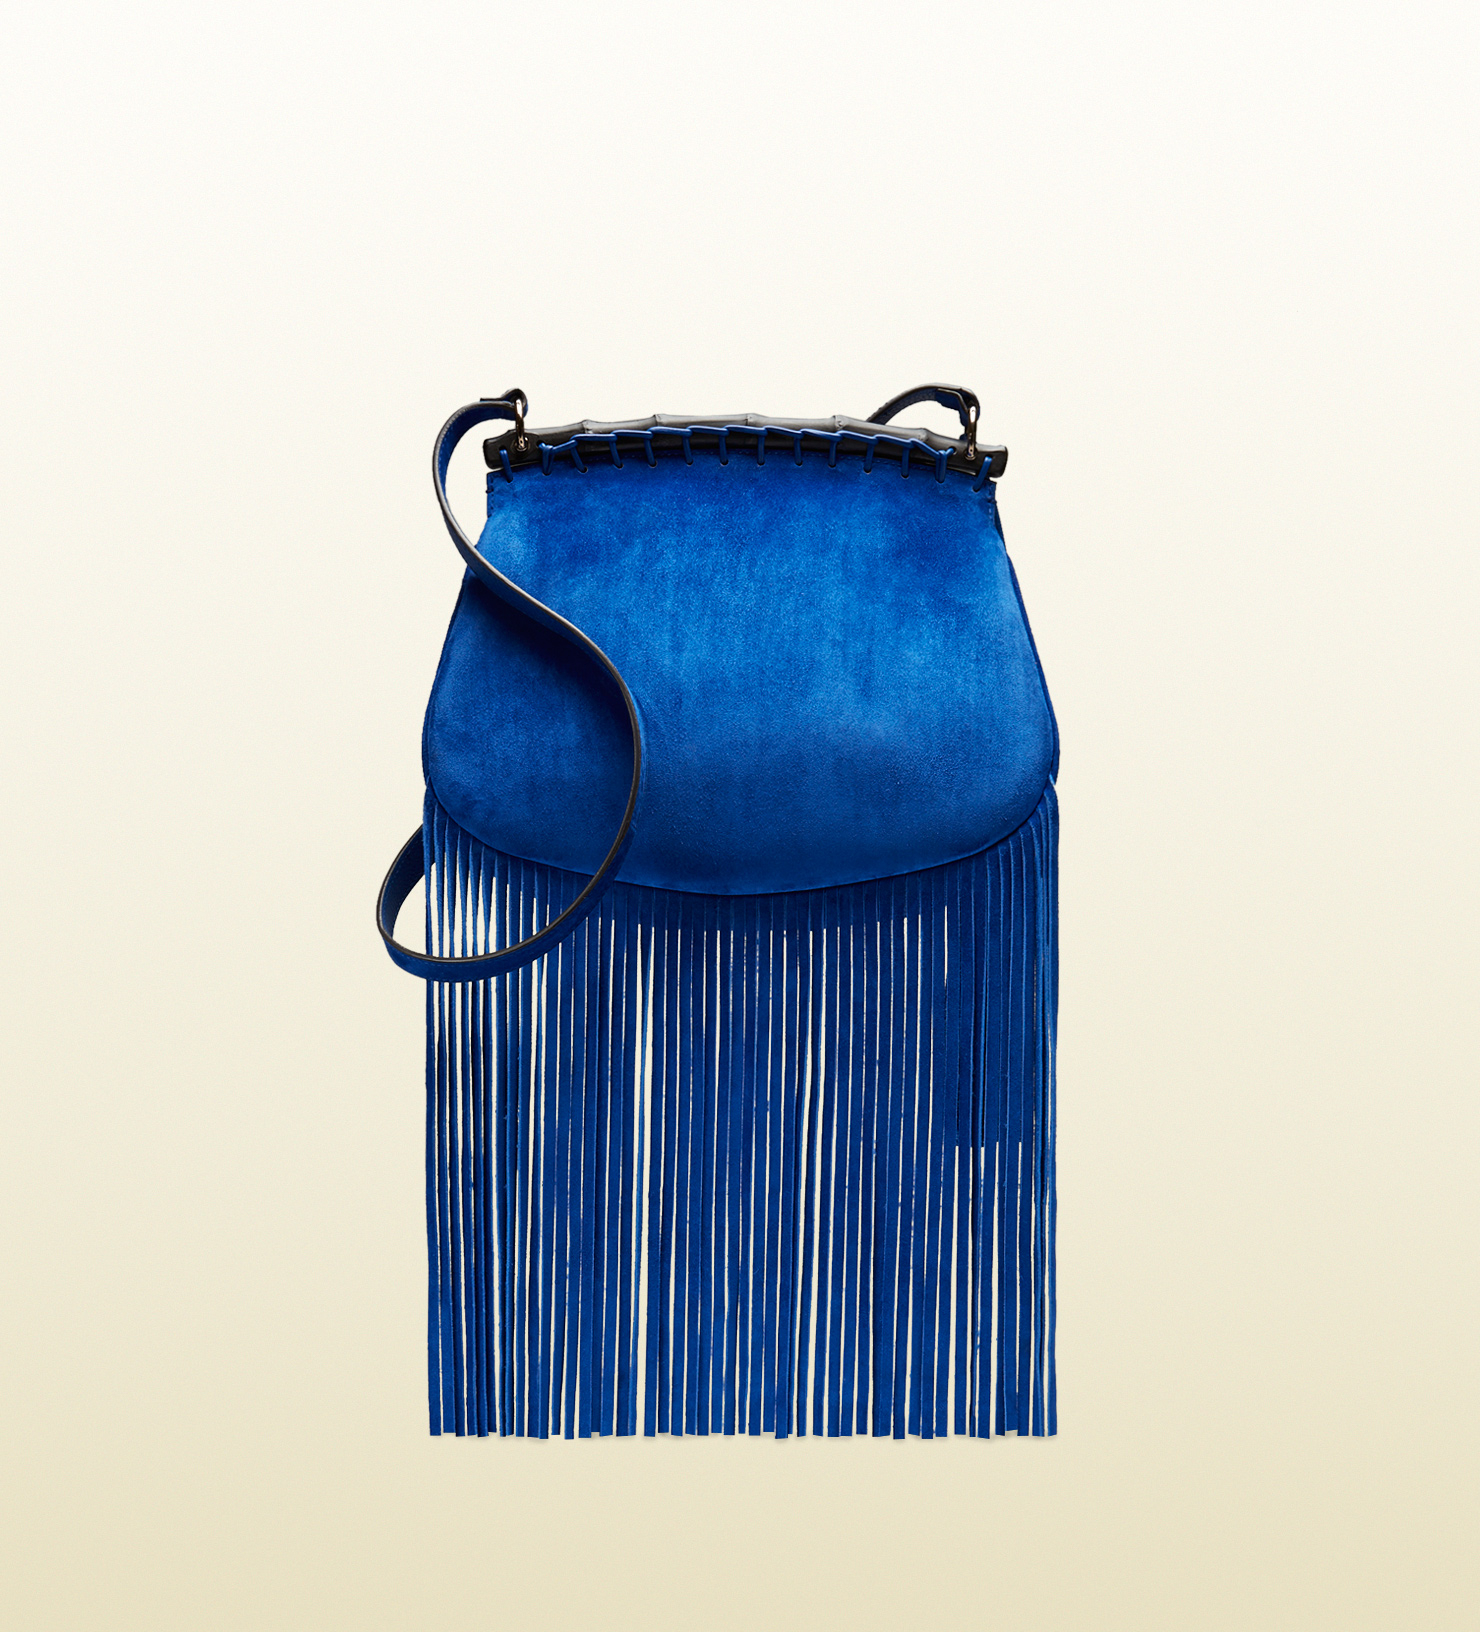 Gucci Velvet Matelasse Mini GG Marmont Shoulder Bag Peacock Blue